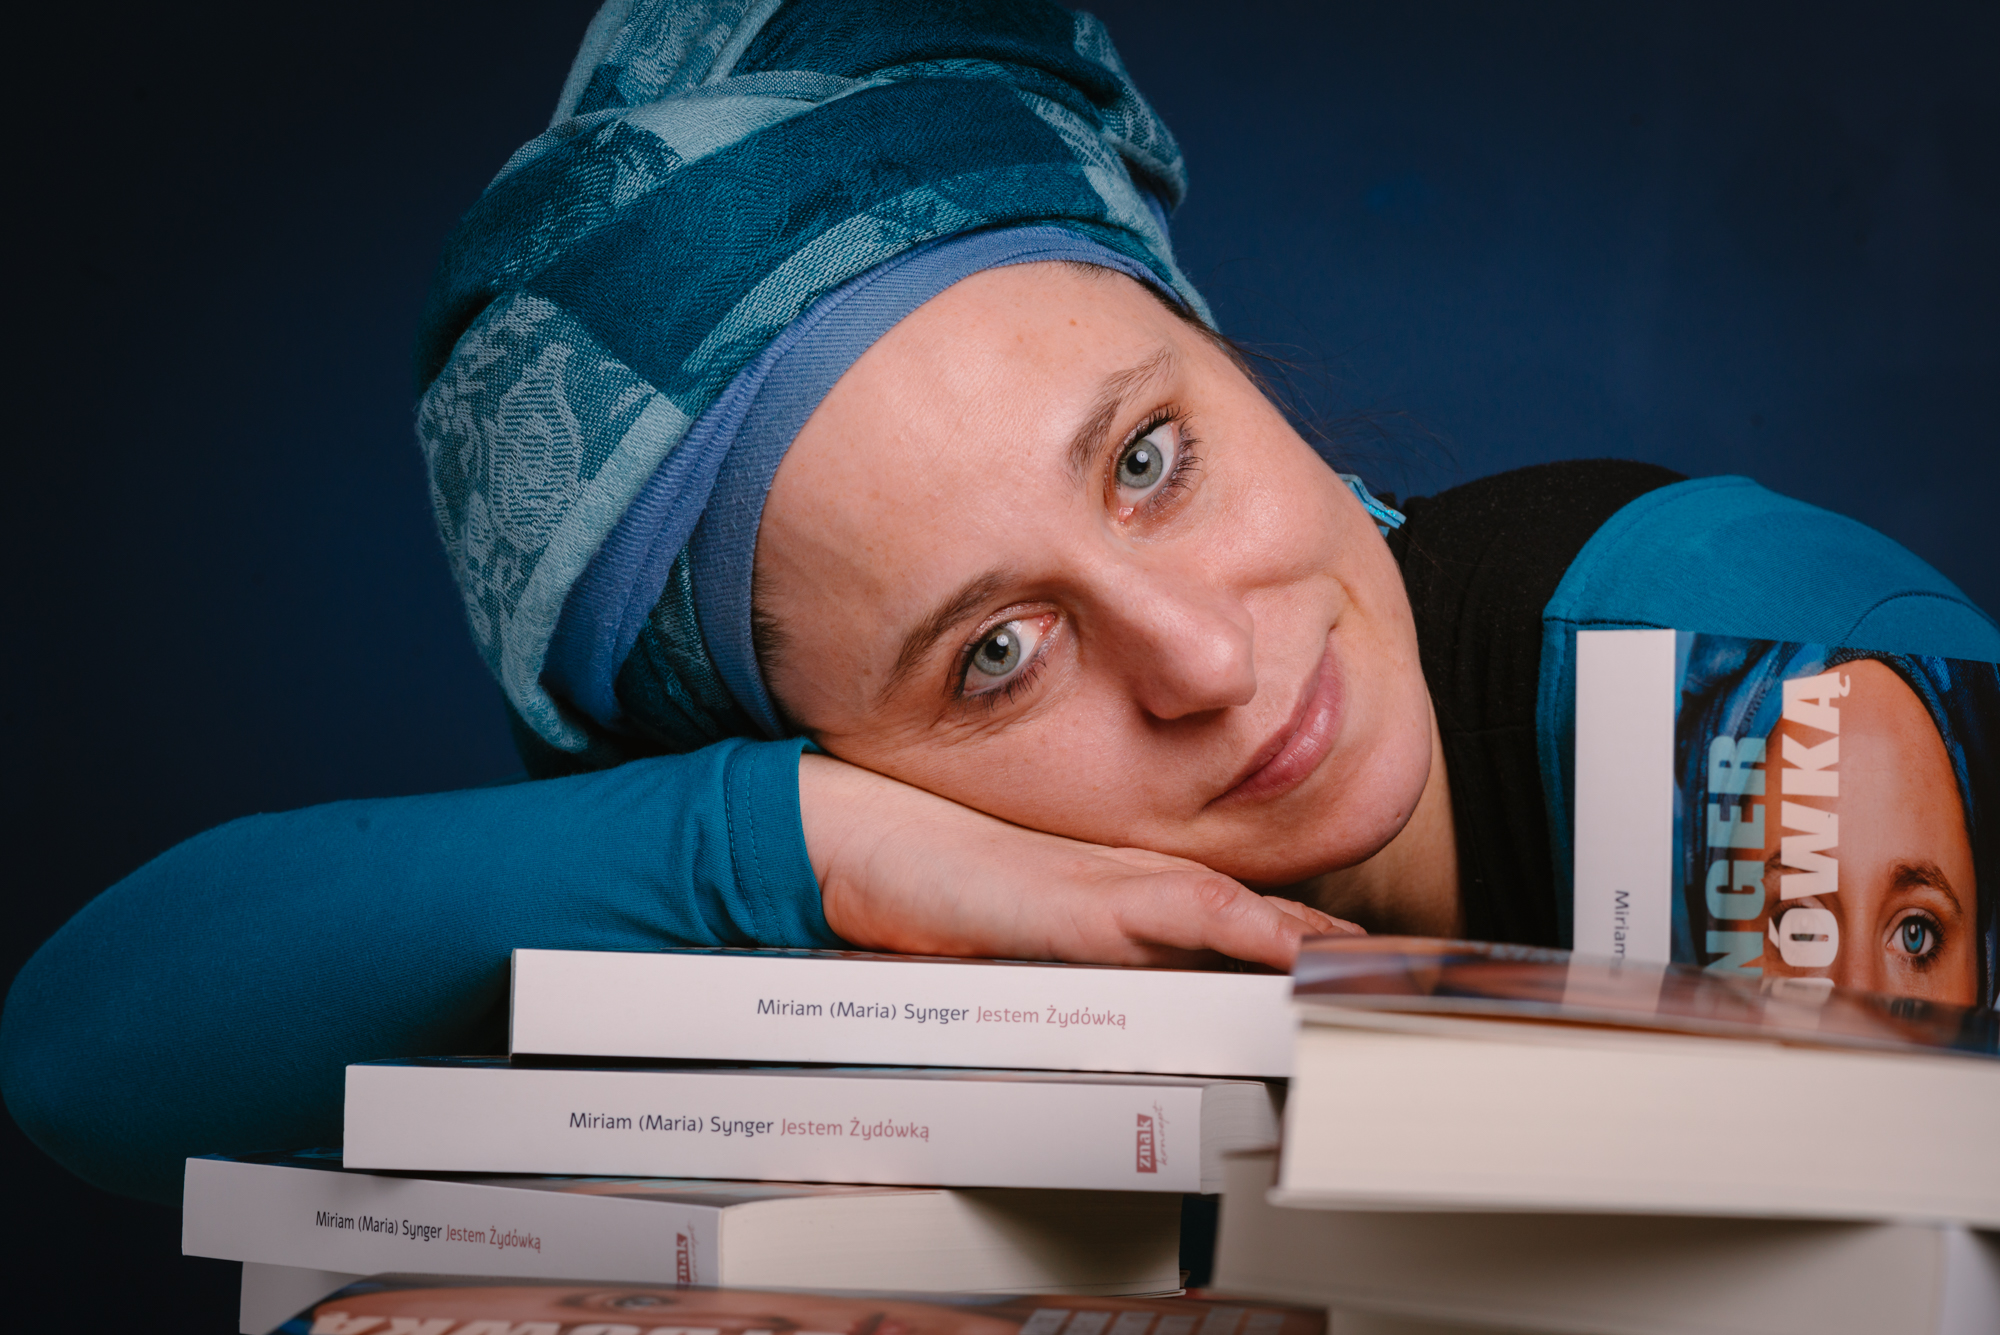 Miriam Synger, młoda kobieta z włosami ukrytymi pod zawojem, opiera dłoń i twarz na ułożonych przed nią książkach.